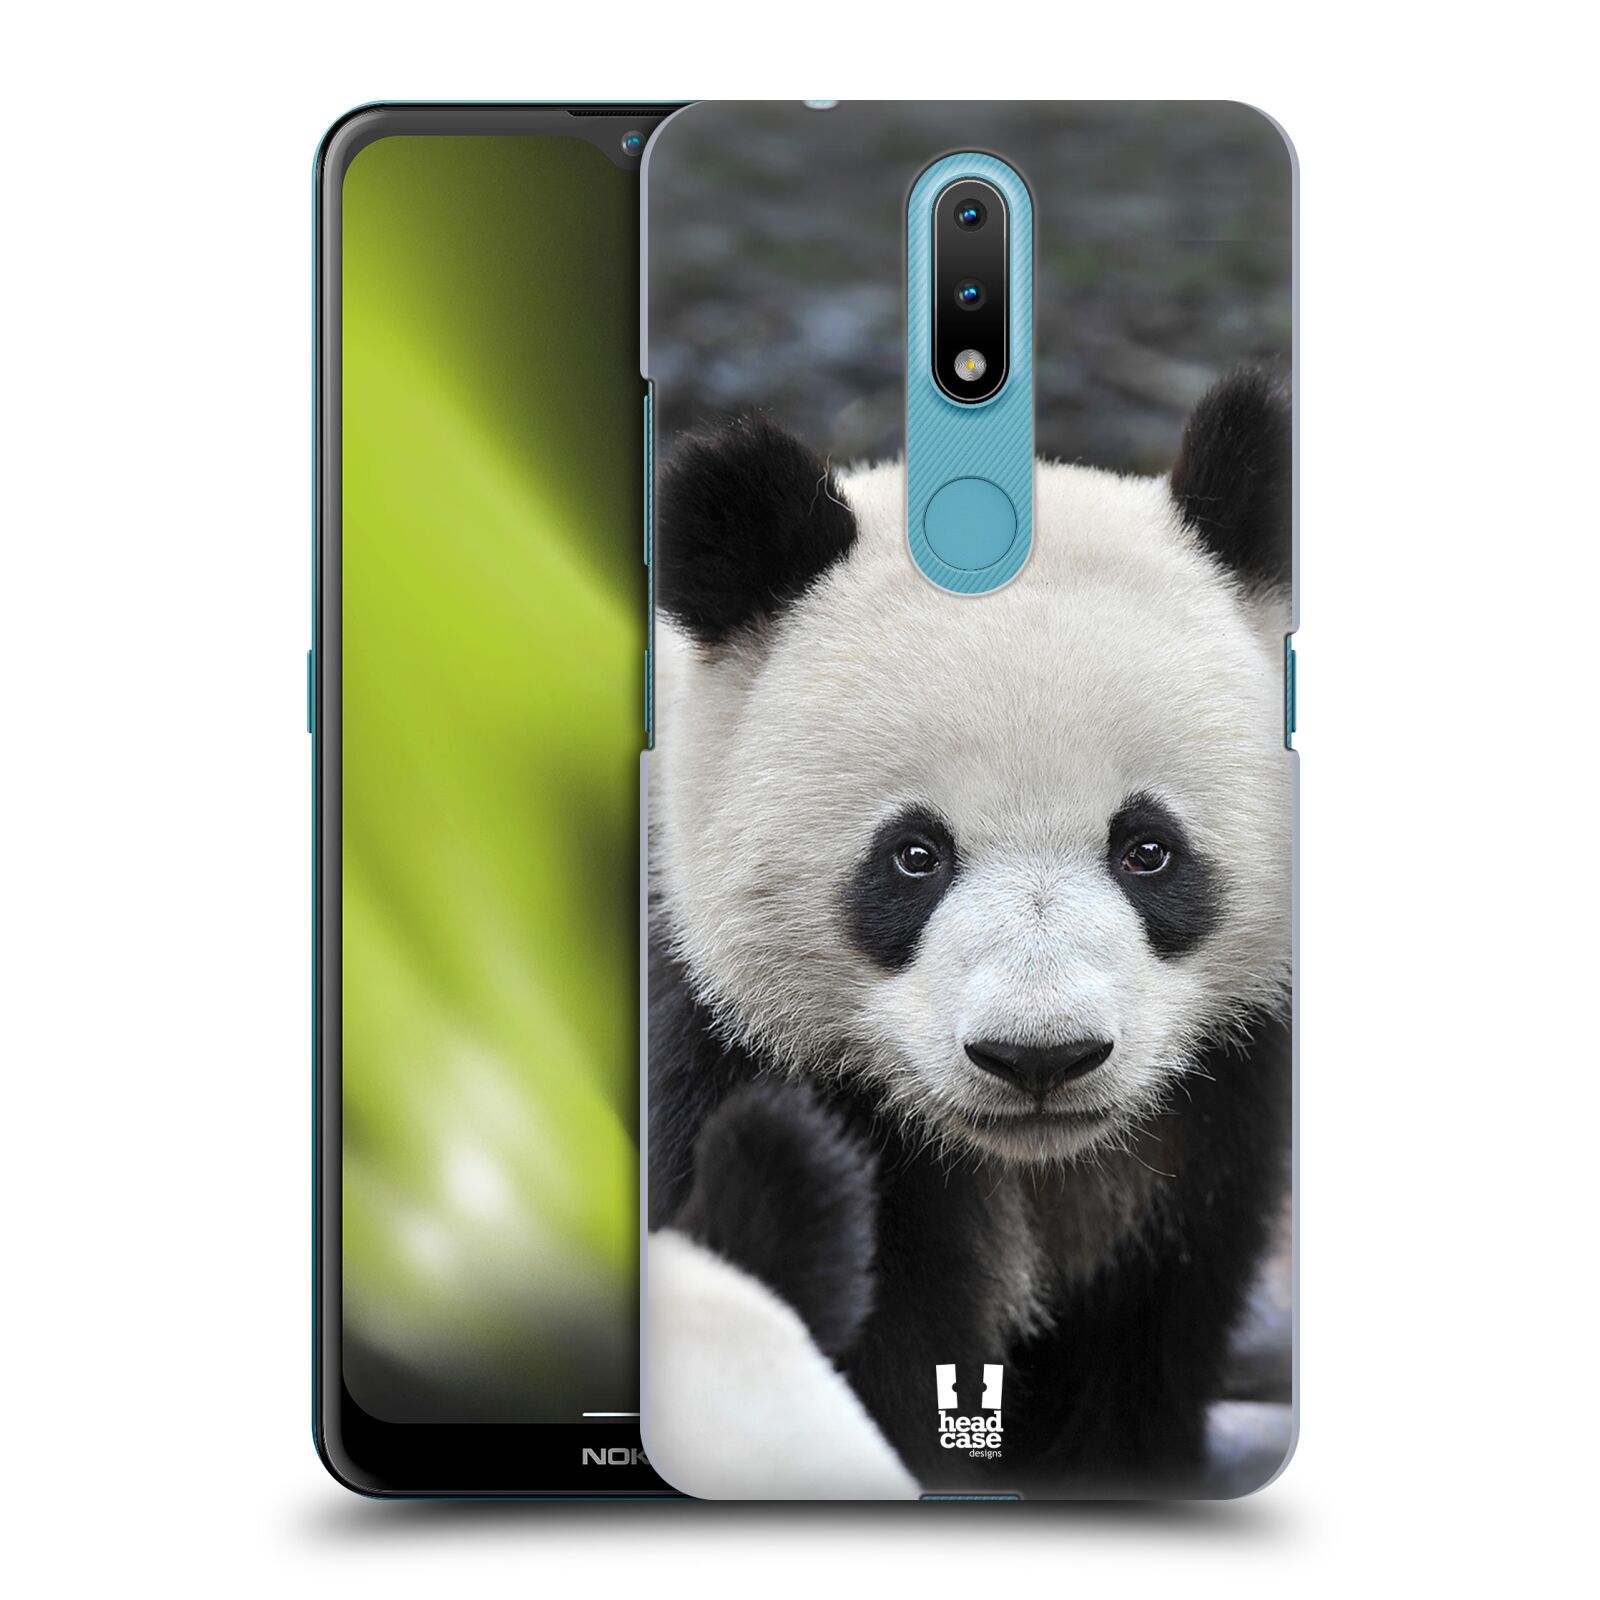 Zadní obal pro mobil Nokia 2.4 - HEAD CASE - Svět zvířat medvěd panda